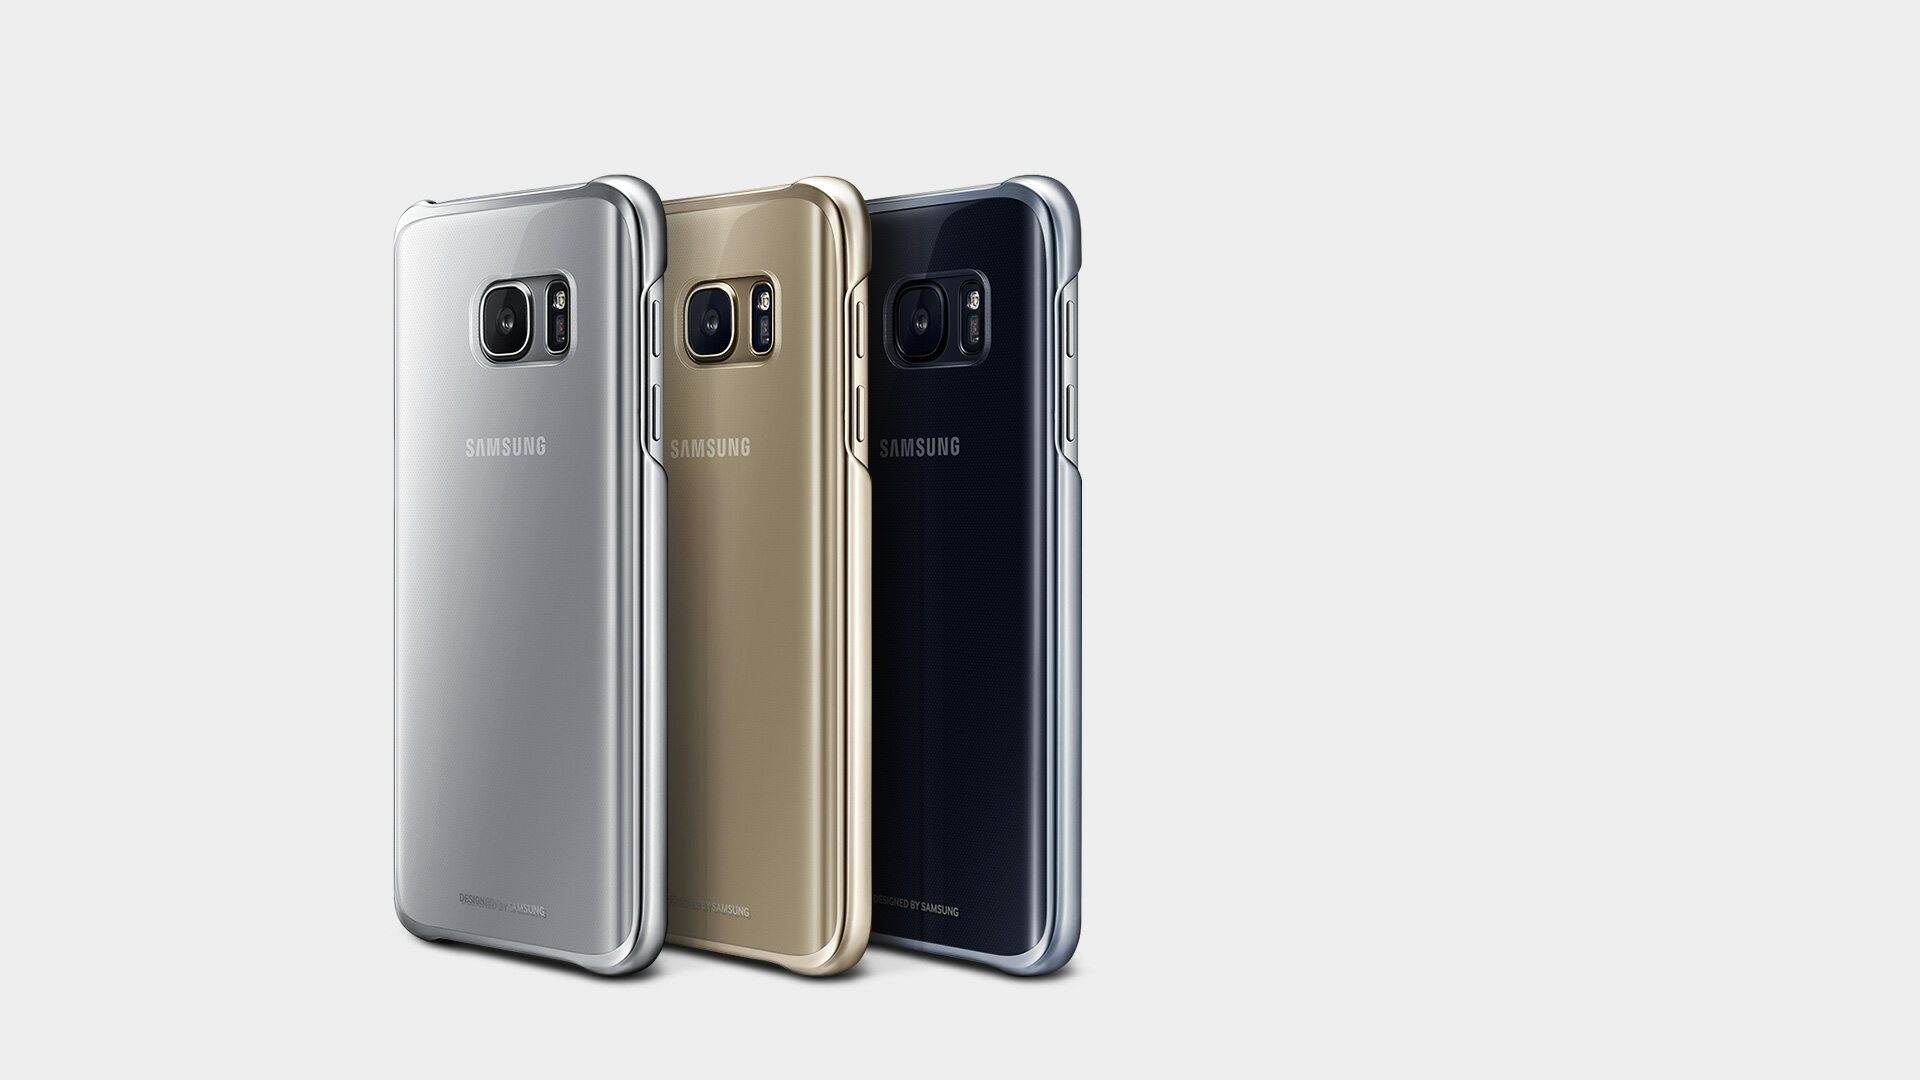 Samsung svela tutti gli accessori per Galaxy S7 e Galaxy S7 Edge | TuttoAndroid1920 x 1080